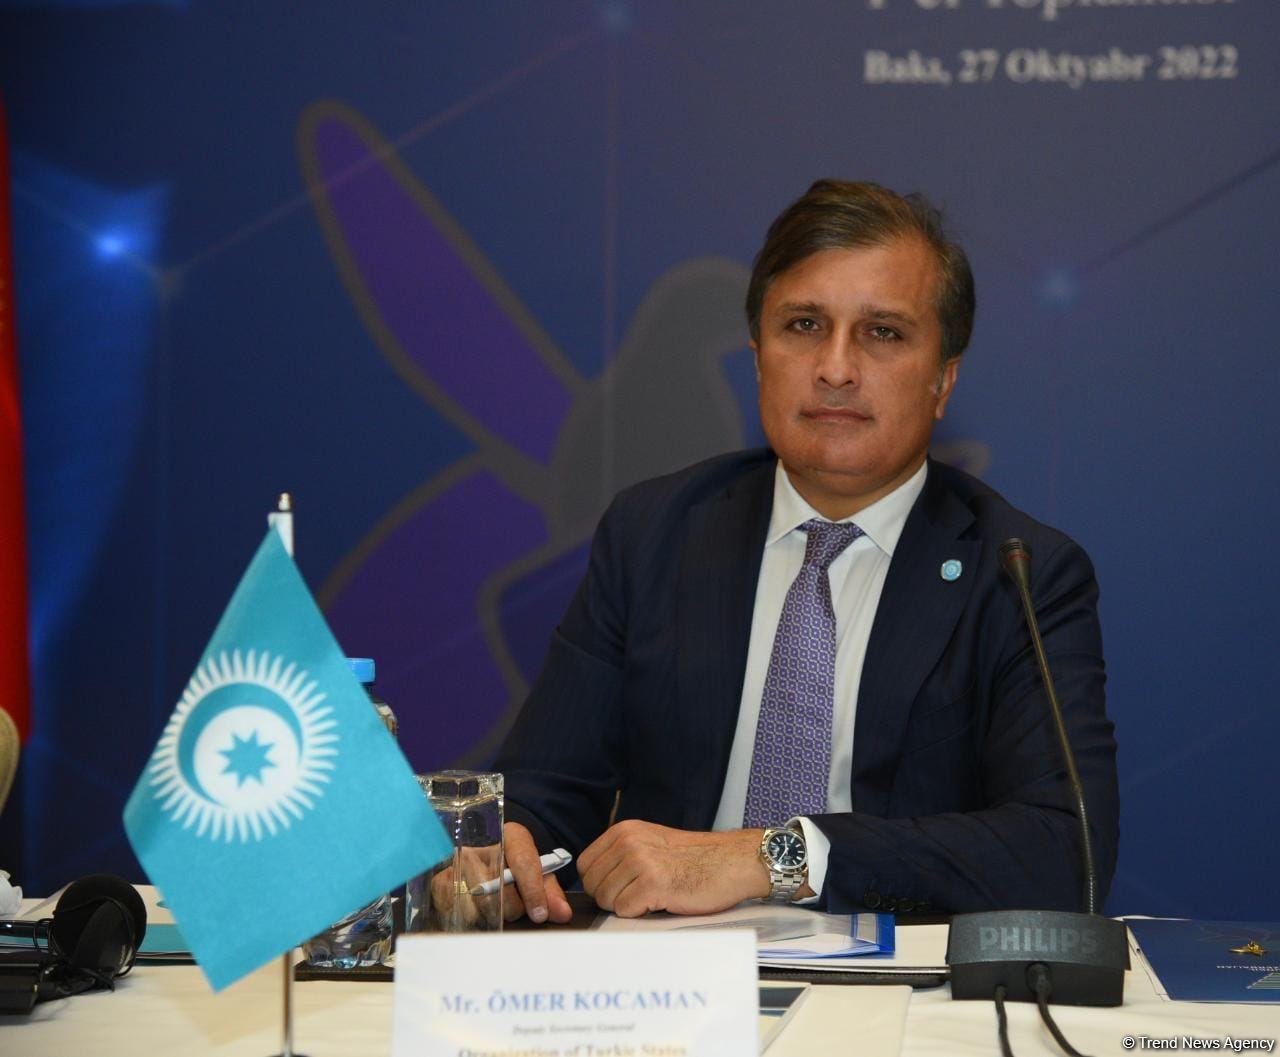 Важность сотрудничества тюркских государств в области аудиовизуальных медиа возрастает -  замгенсекретаря ОТГ